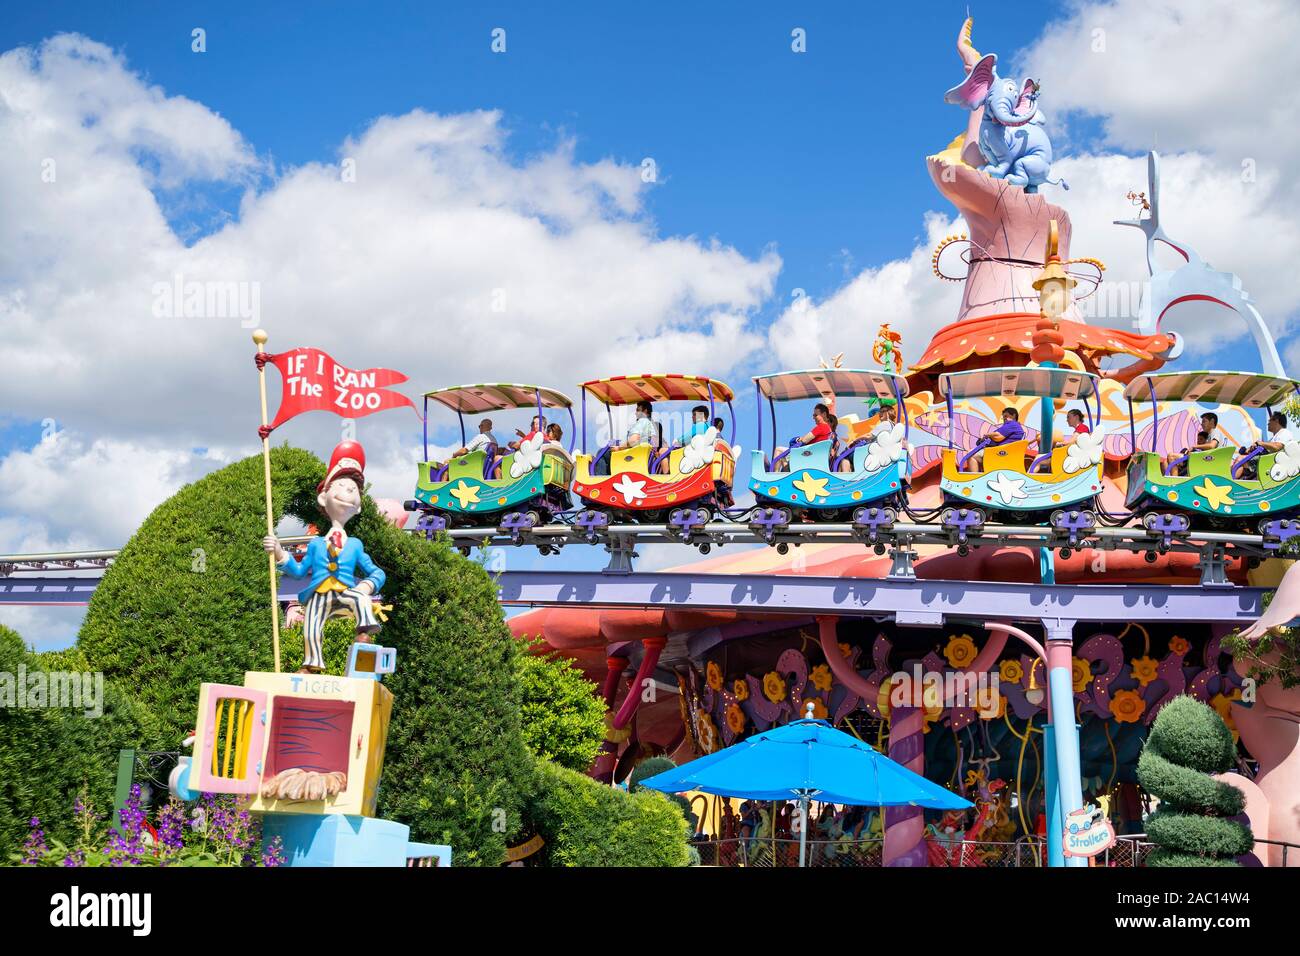 Seuss Carrello di atterraggio in treno, persone sulle giostre, famiglia, adulti con bambini, Isole di avventura, Universal Studios, Orlando, Florida, Stati Uniti d'America Foto Stock